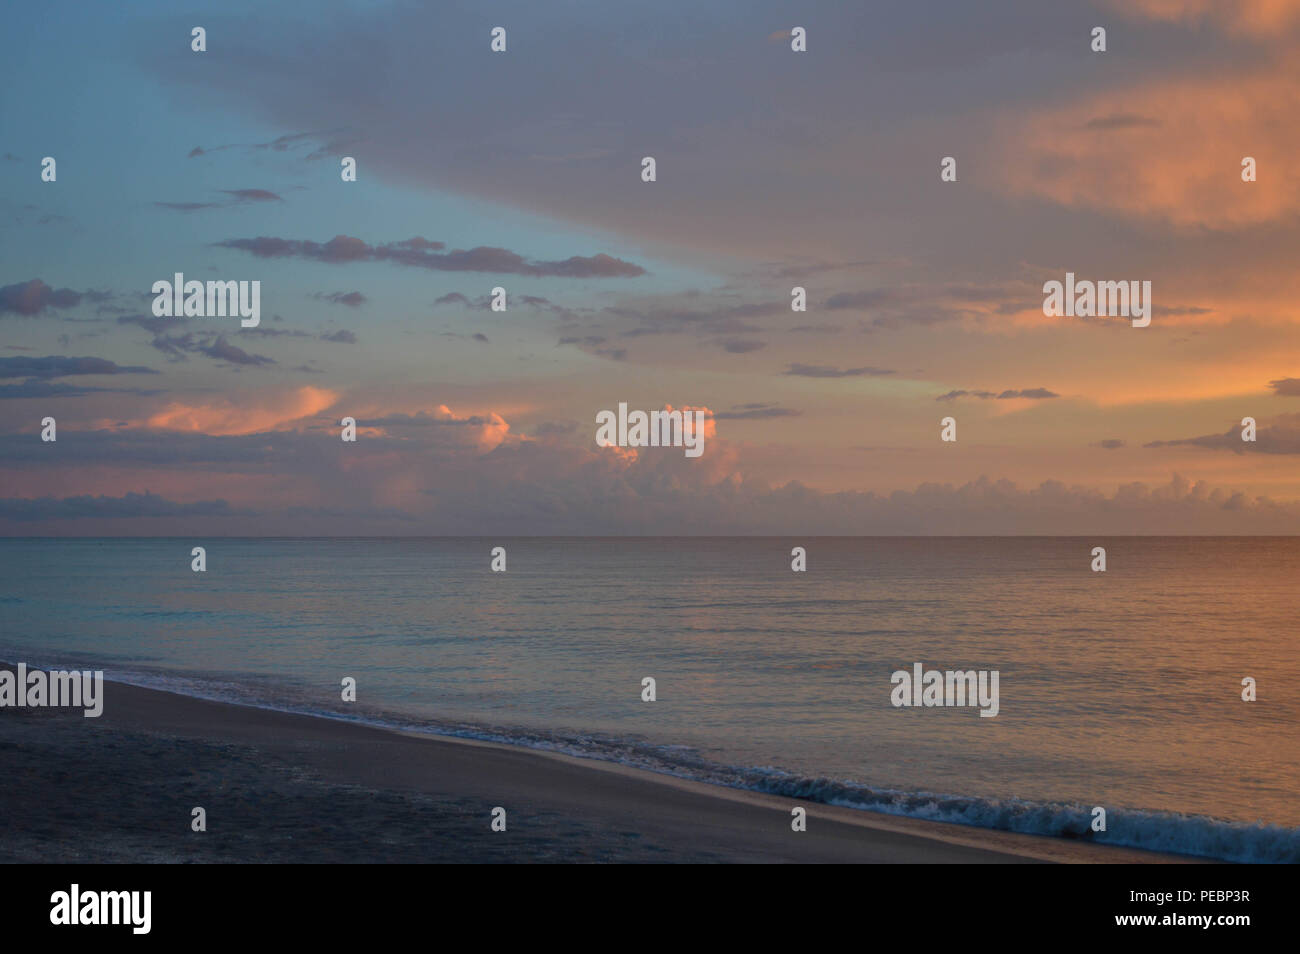 Idyllischen Florida Sommer beruhigende Abend bunte Küste Himmel Wolken Wasser Reflexionen Licht Seascape Sonnenuntergang auf ruhige ruhige Wasser surfen Shoreline Stockfoto